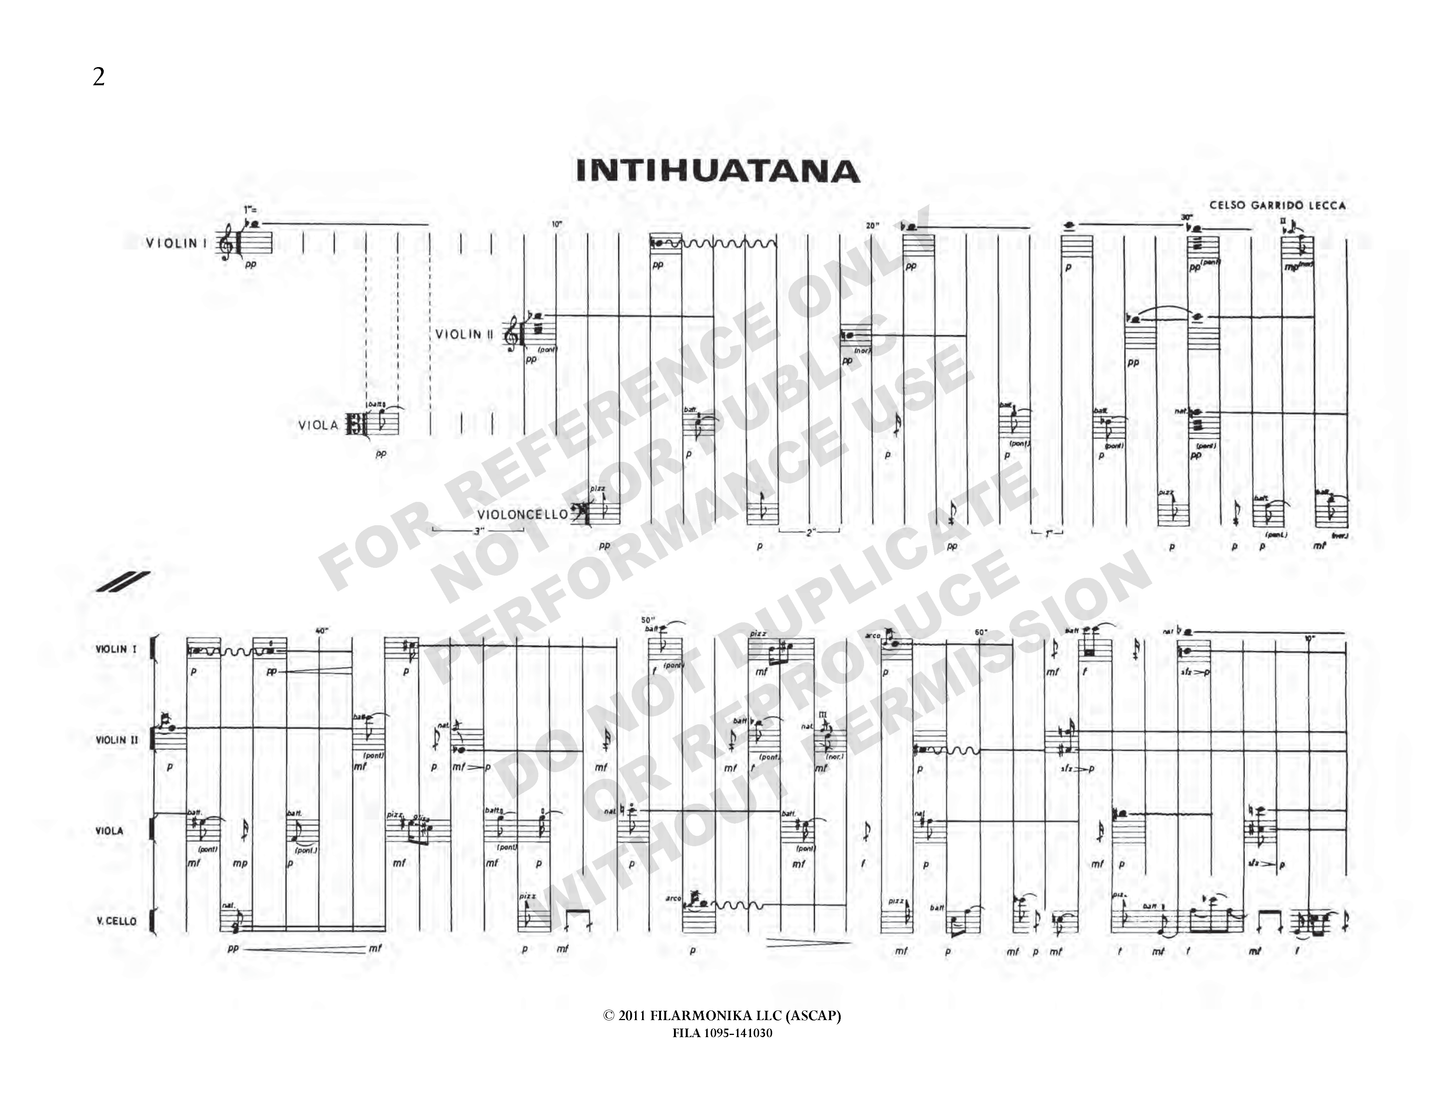 Intihuatana, for string quartet